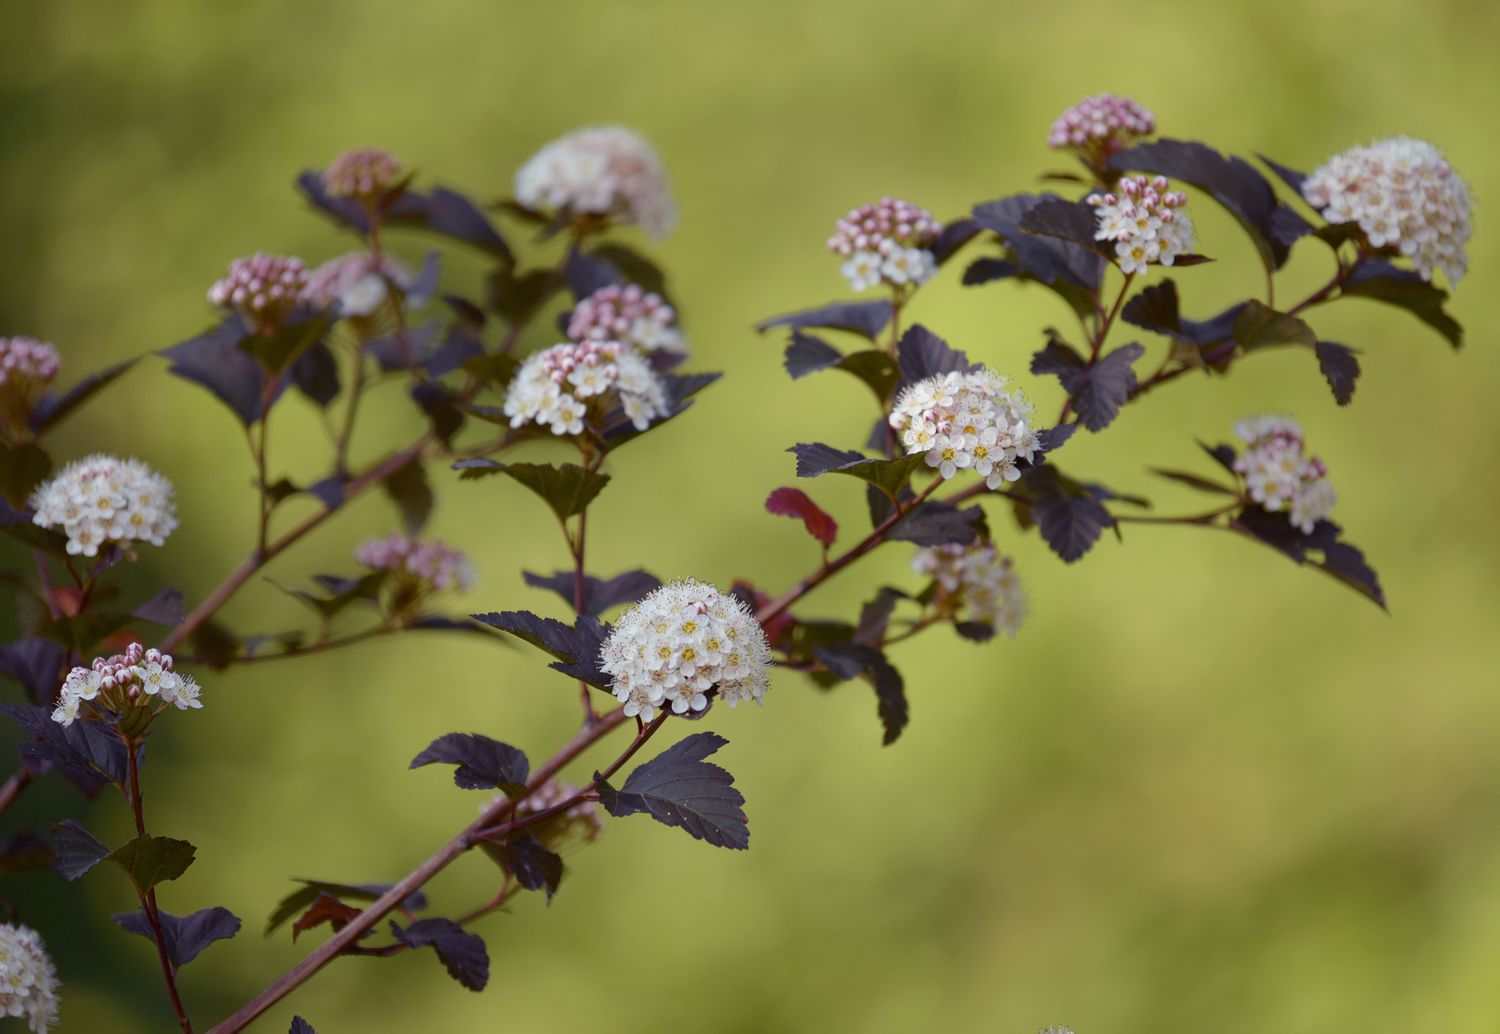 Diablo-Neunrindenzweige mit dunkelvioletten Blättern und kleinen weißen und rosa Blütenbüscheln